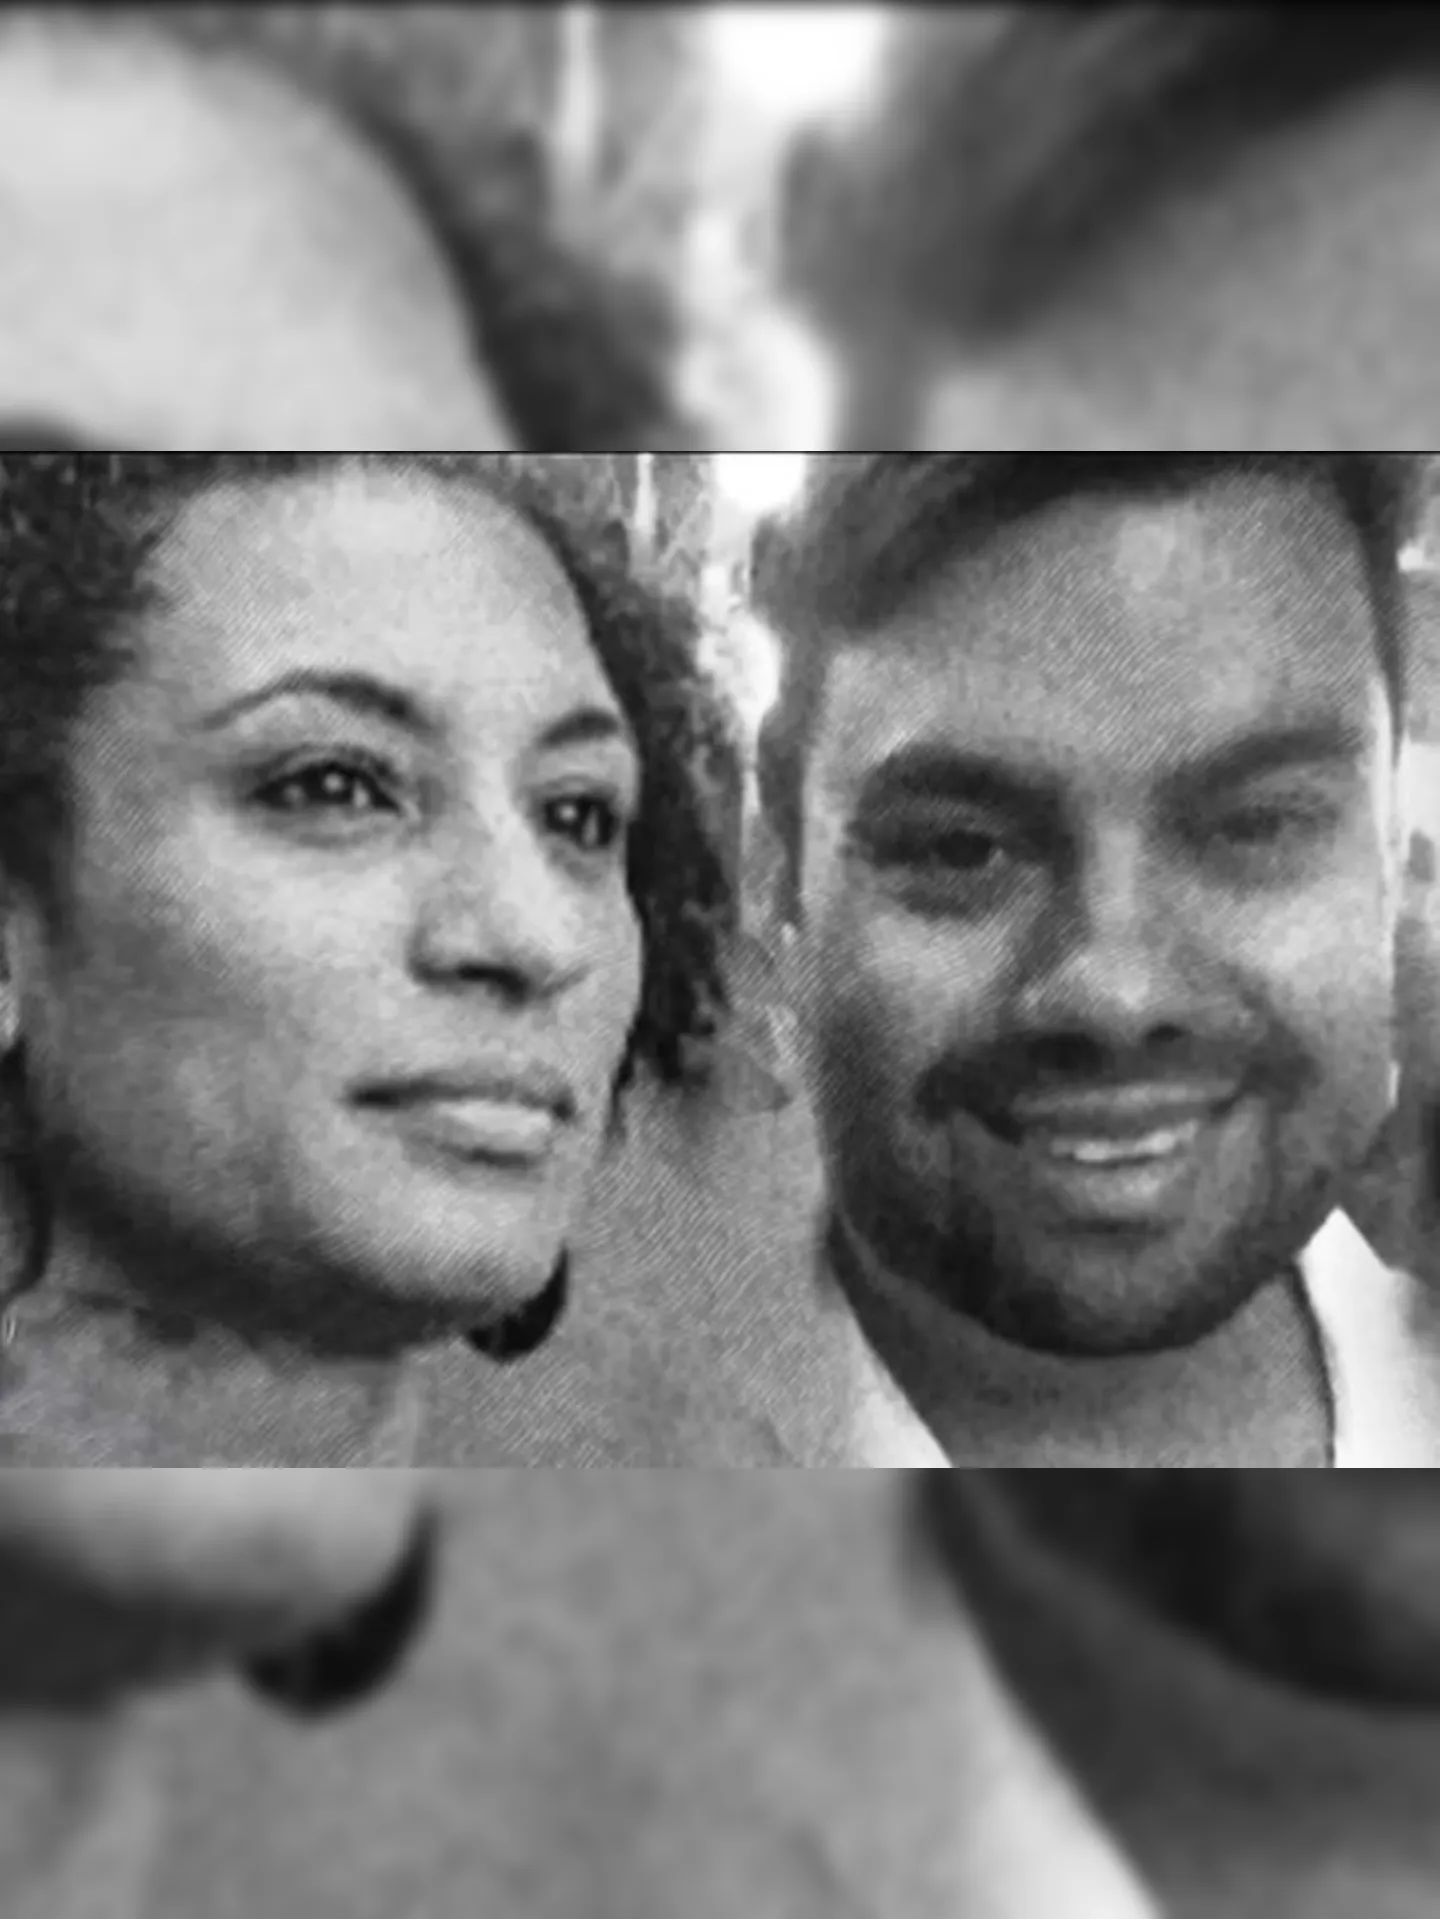 Marielle Franco e Anderson Gomes foram mortos em uma noite de terça-feira